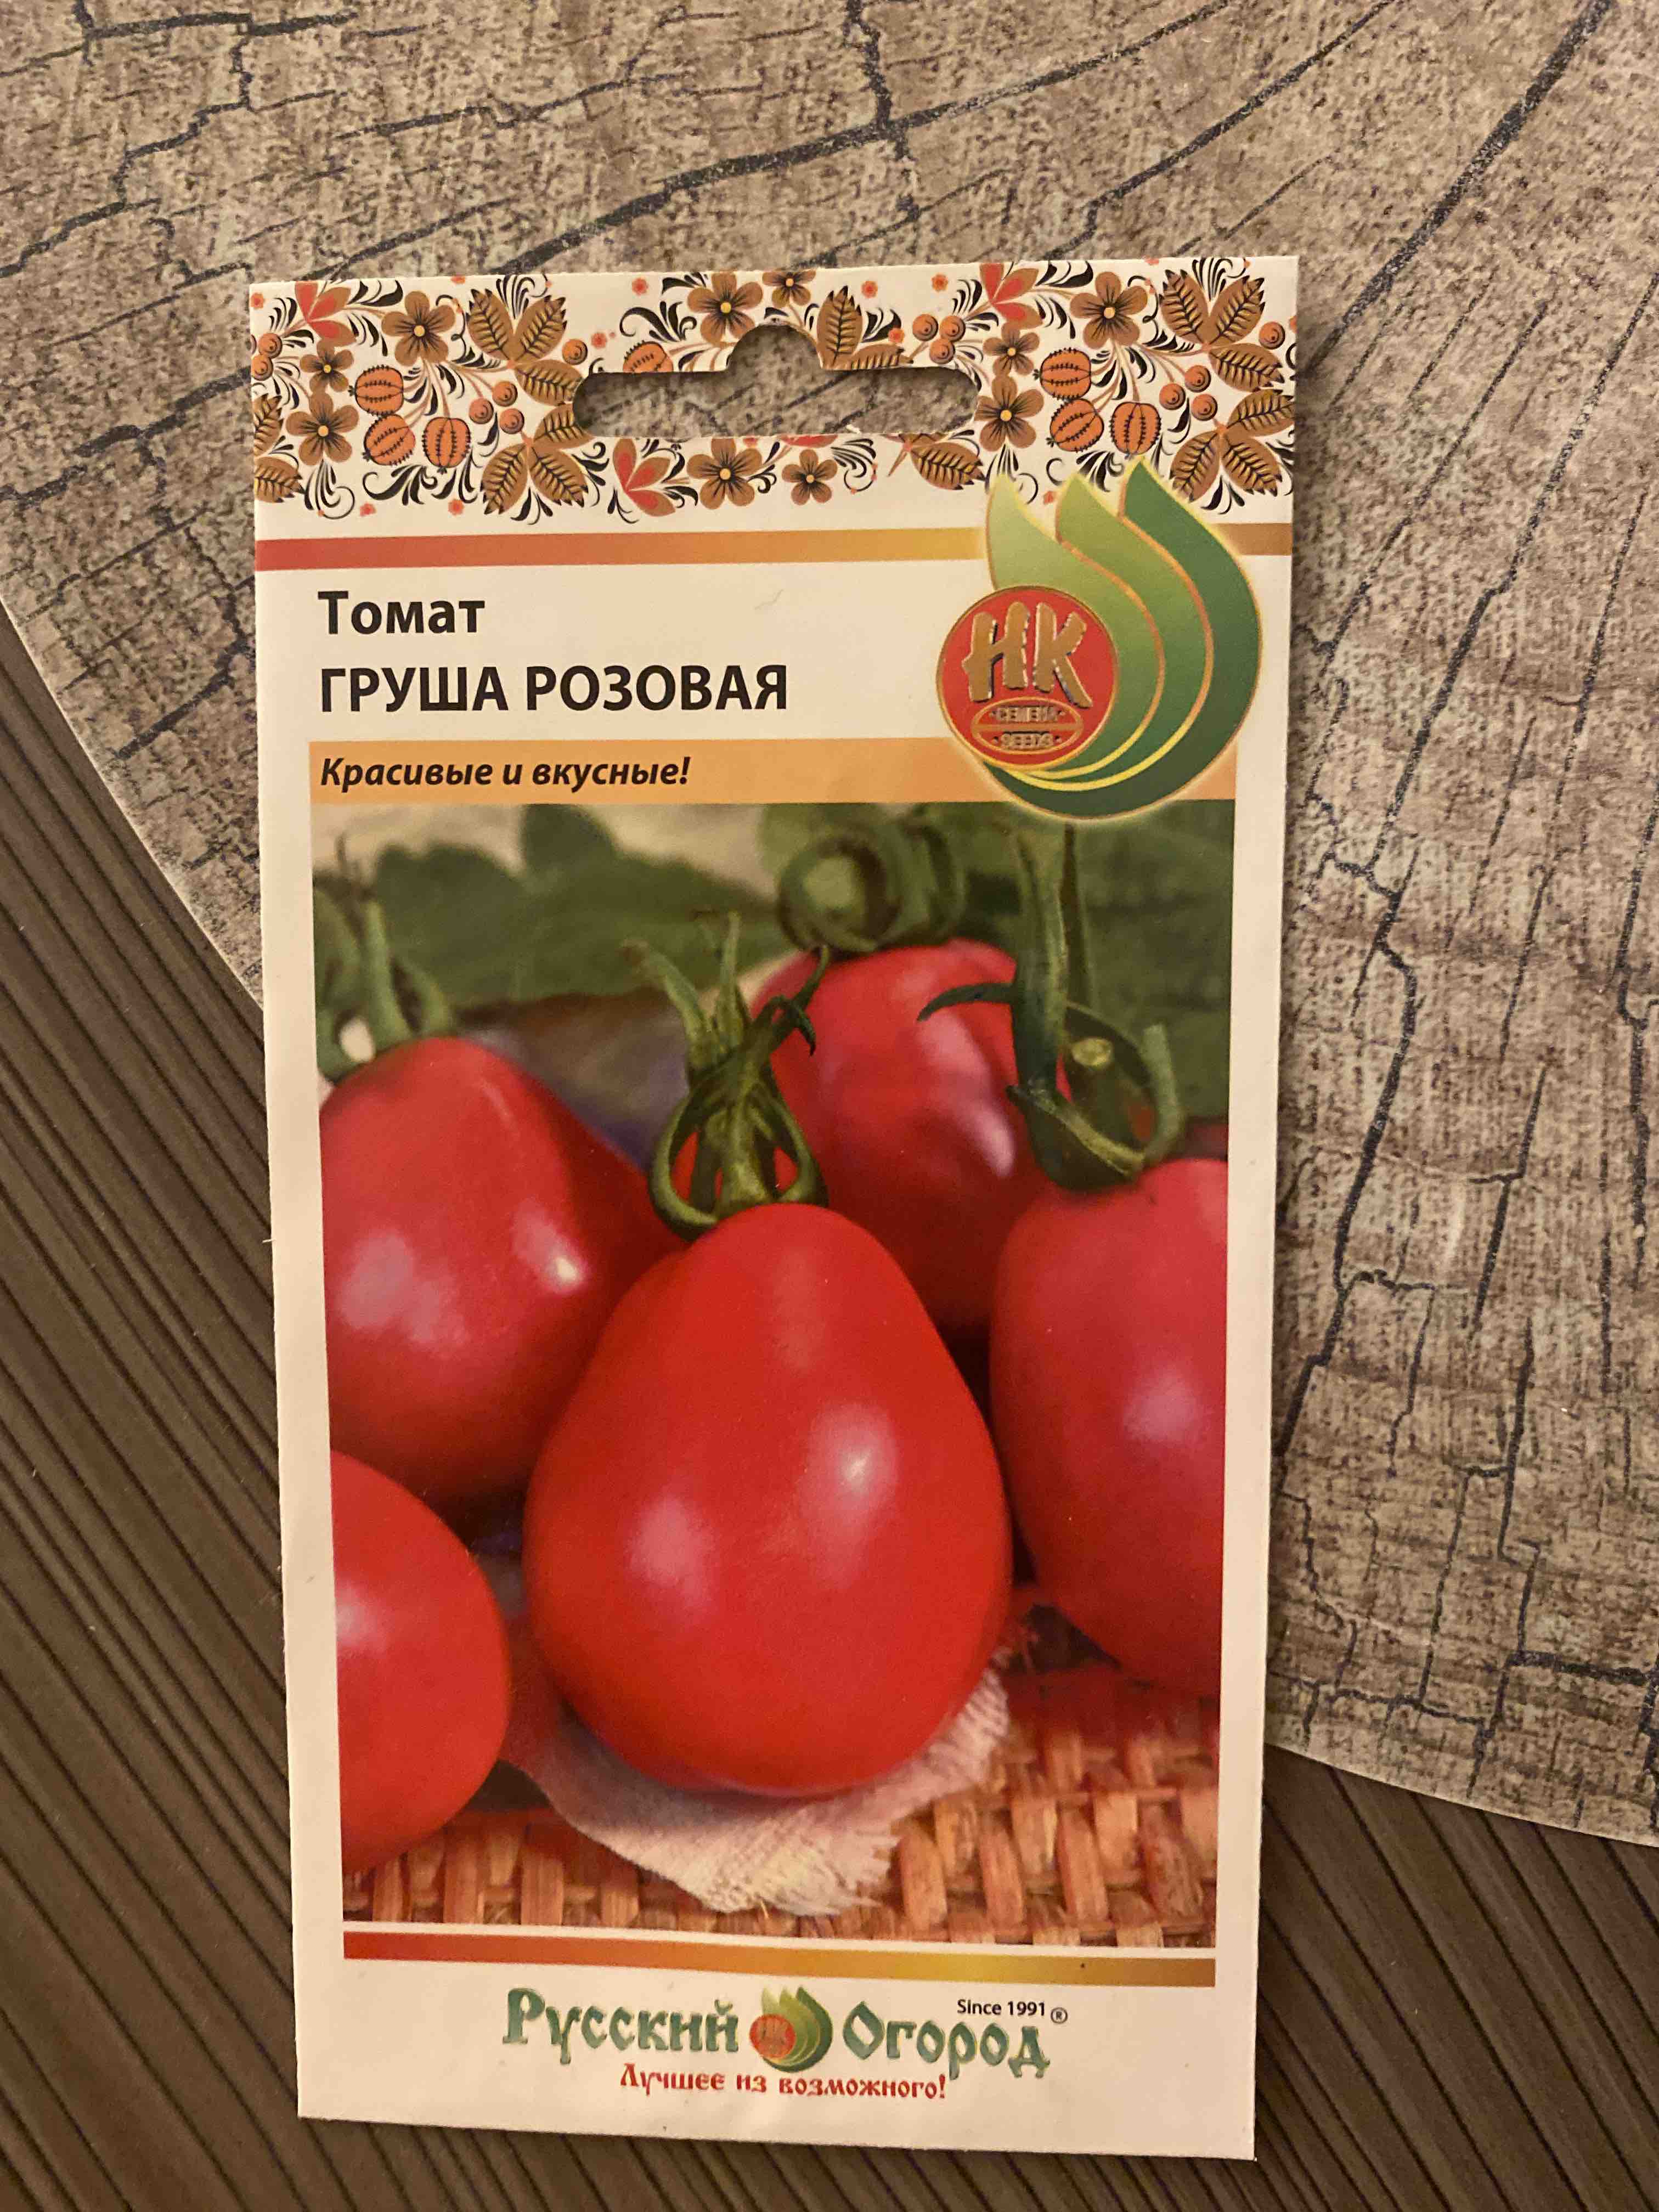 Томат Груша розовая описание сорта помидоров характеристики посадка и выращивание болезни и вредители Отзывы